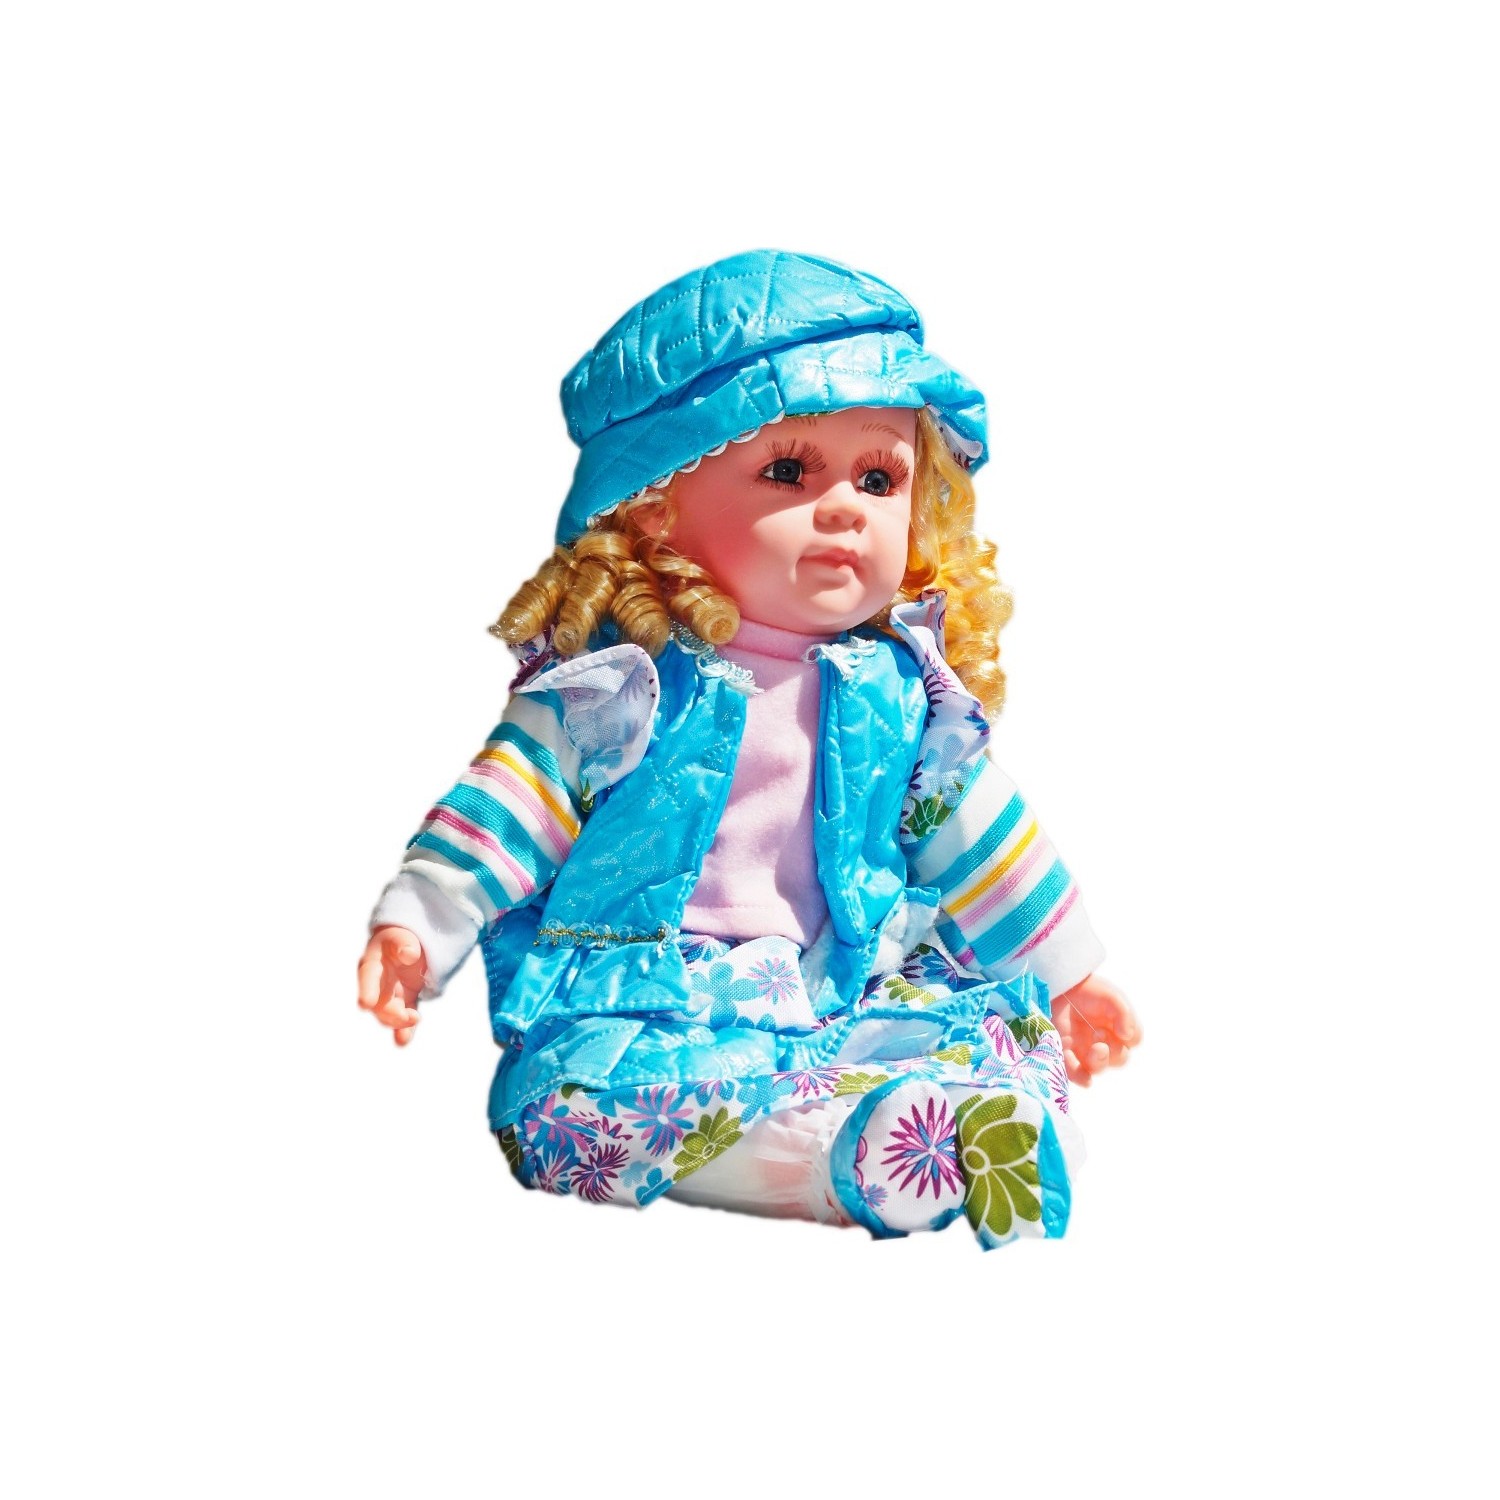 Yabidur Oyuncak Baby Doll Gerçek Yüzlü Et Bebe - PttAVM.com